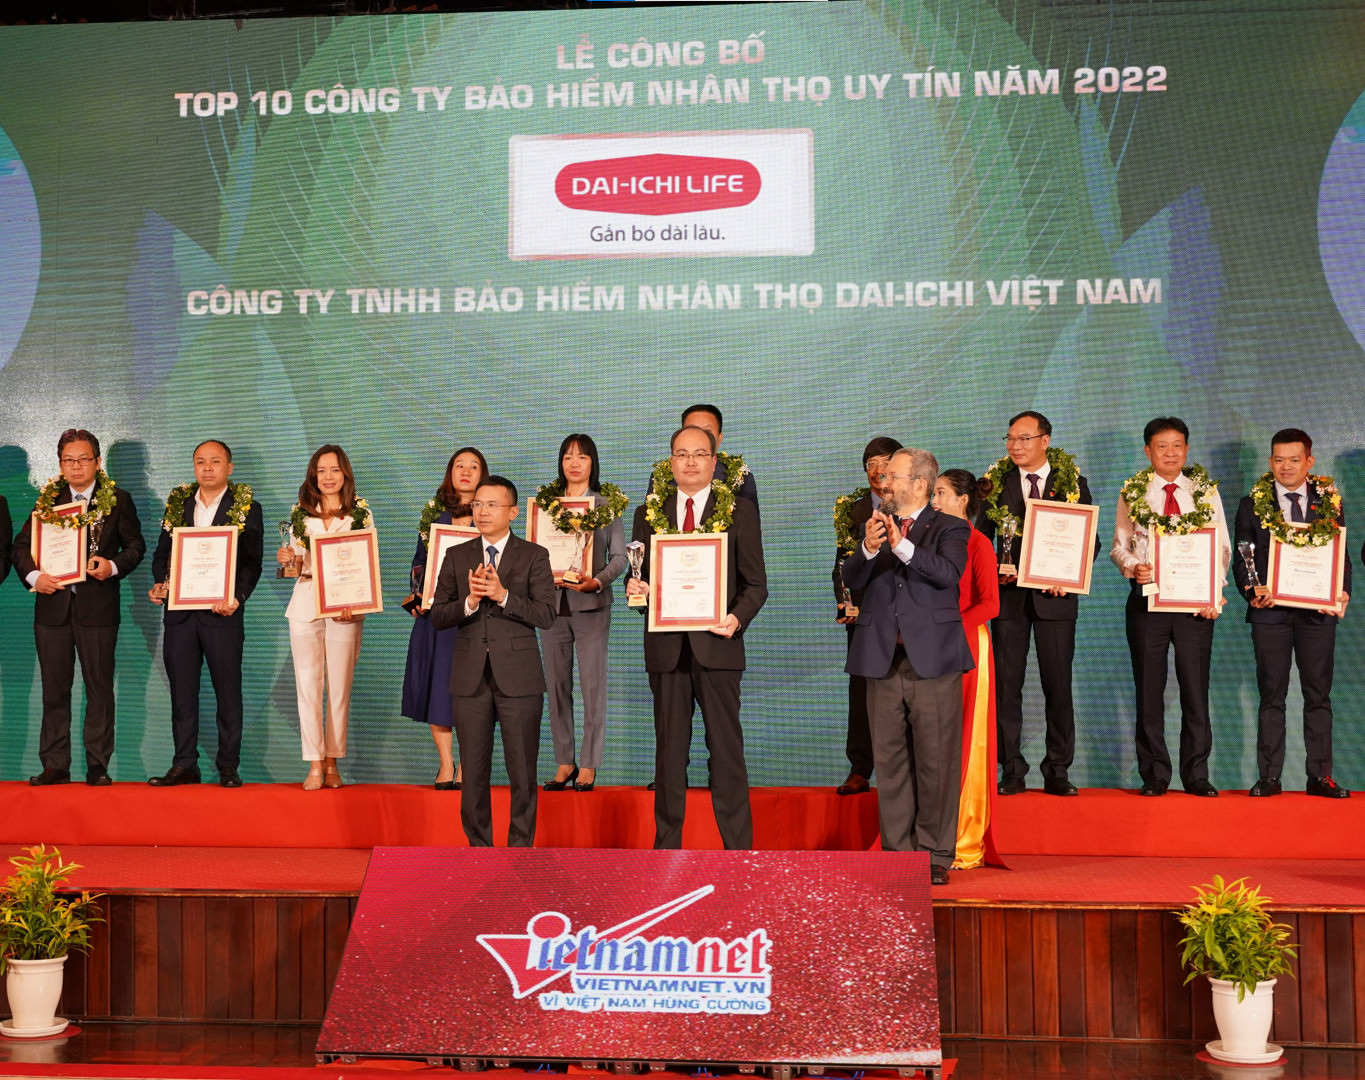 Dai-ichi Life Việt Nam vinh dự đạt danh hiệu Top 2 Công ty Bảo hiểm Nhân thọ uy tín năm 2022...